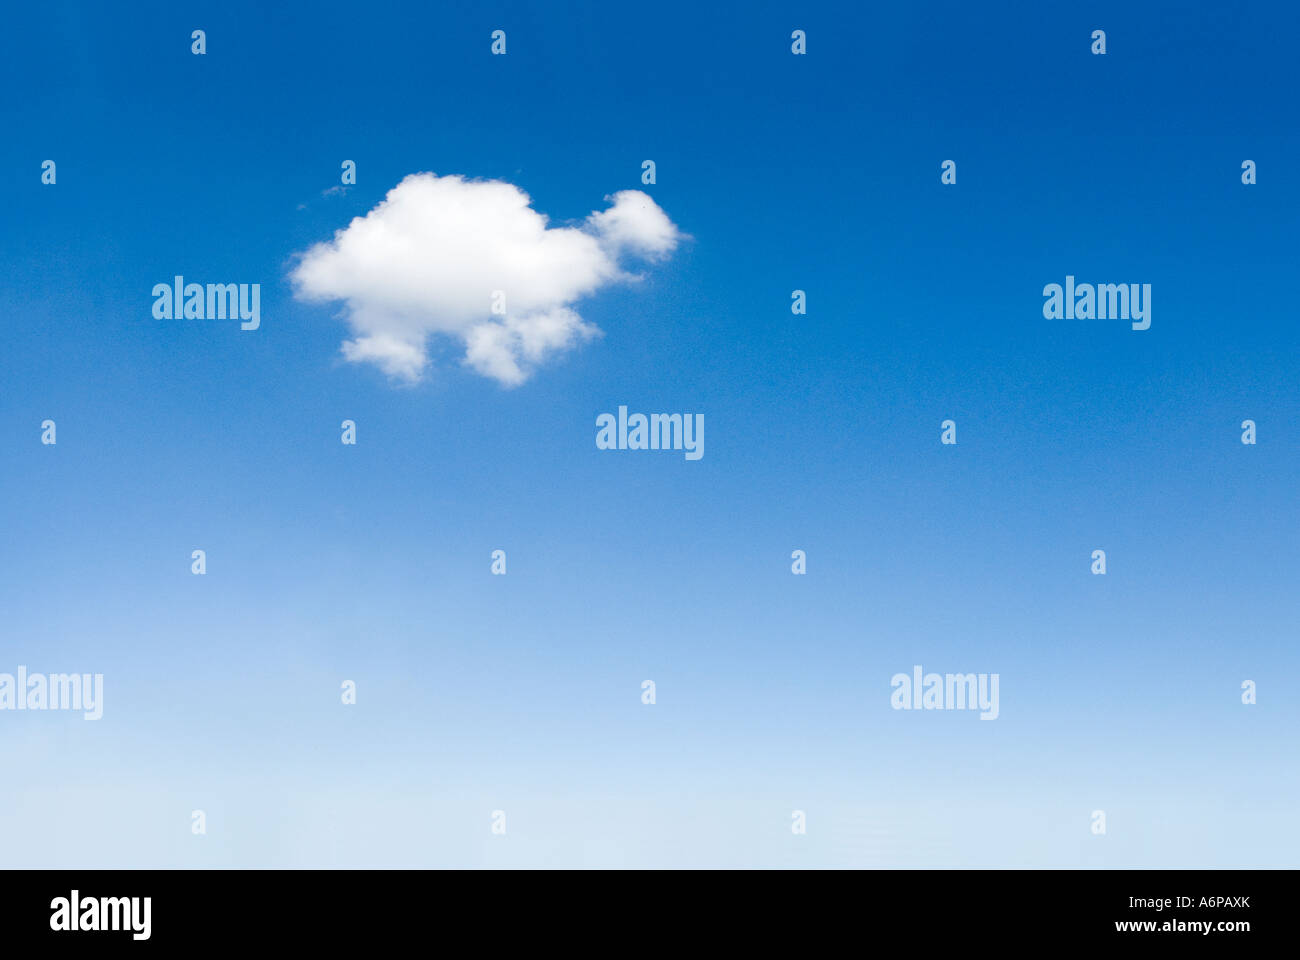 Un seul nuage moelleux doux blanc dans le ciel bleu en forme d'un animal Banque D'Images